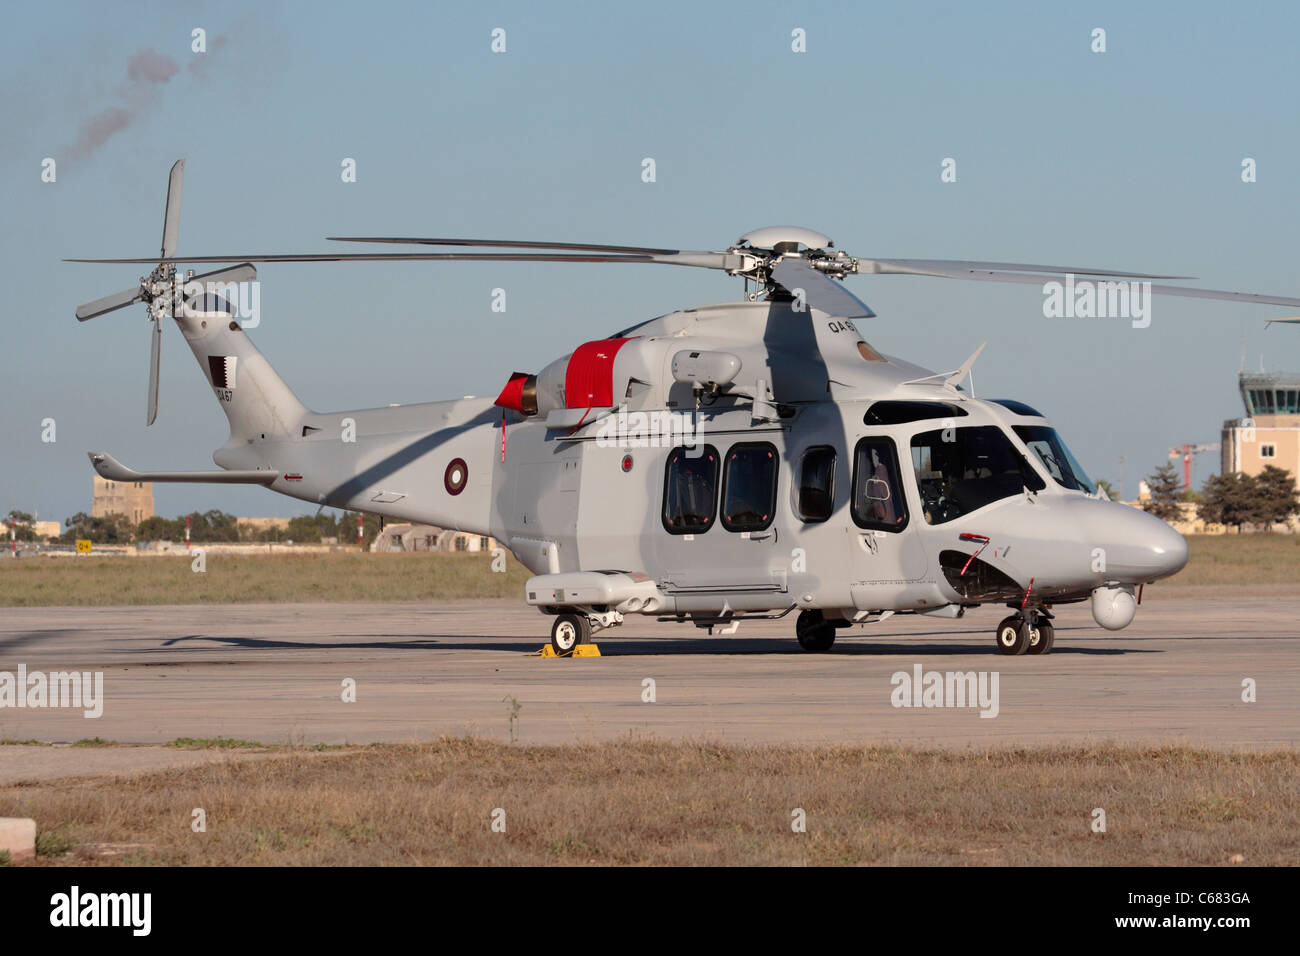 AgustaWestland AW139 militärische Hubschrauber der Luftwaffe des Emirs von Qatar Stockfoto